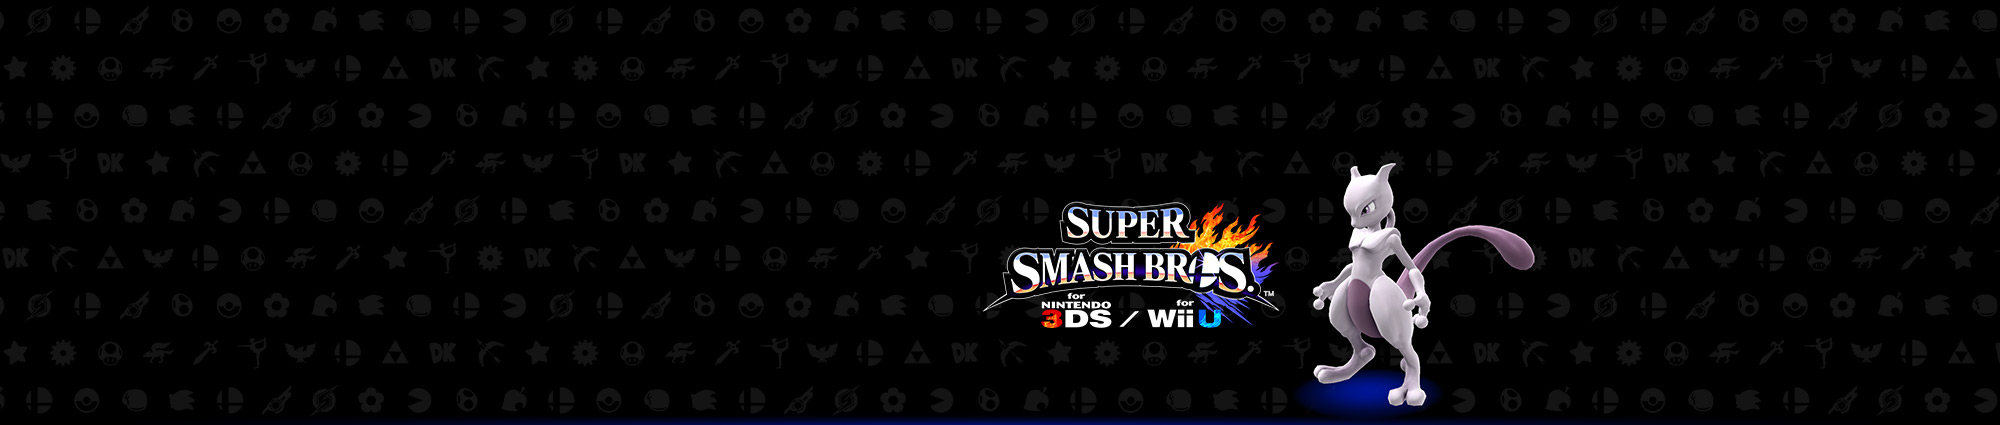 Promoção Club Nintendo - Super Smash Bros.